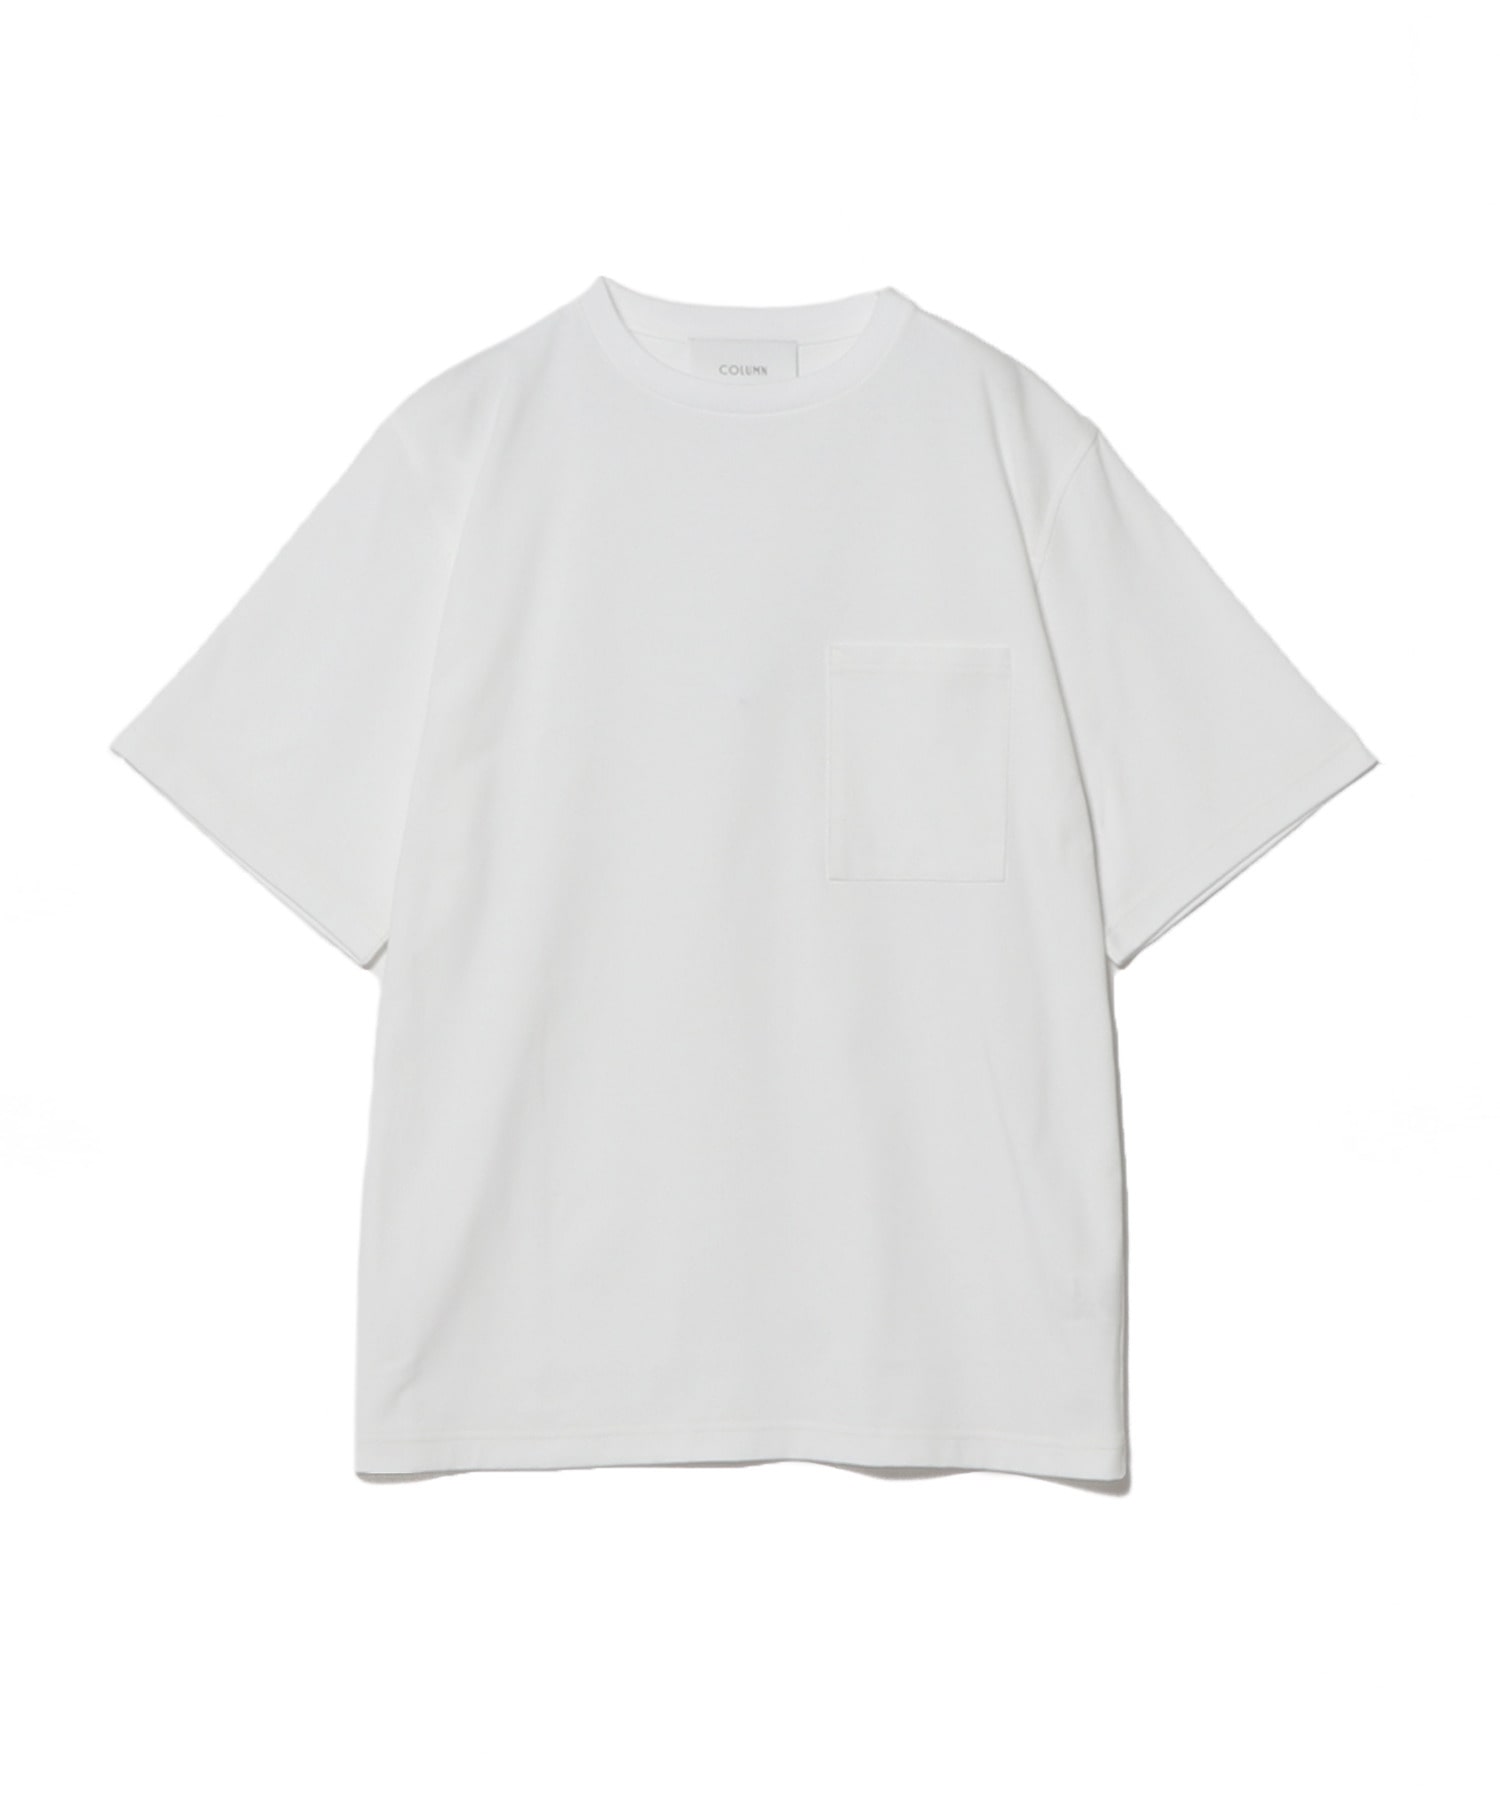 ステッチワークポケットTシャツ 詳細画像 ホワイト 6